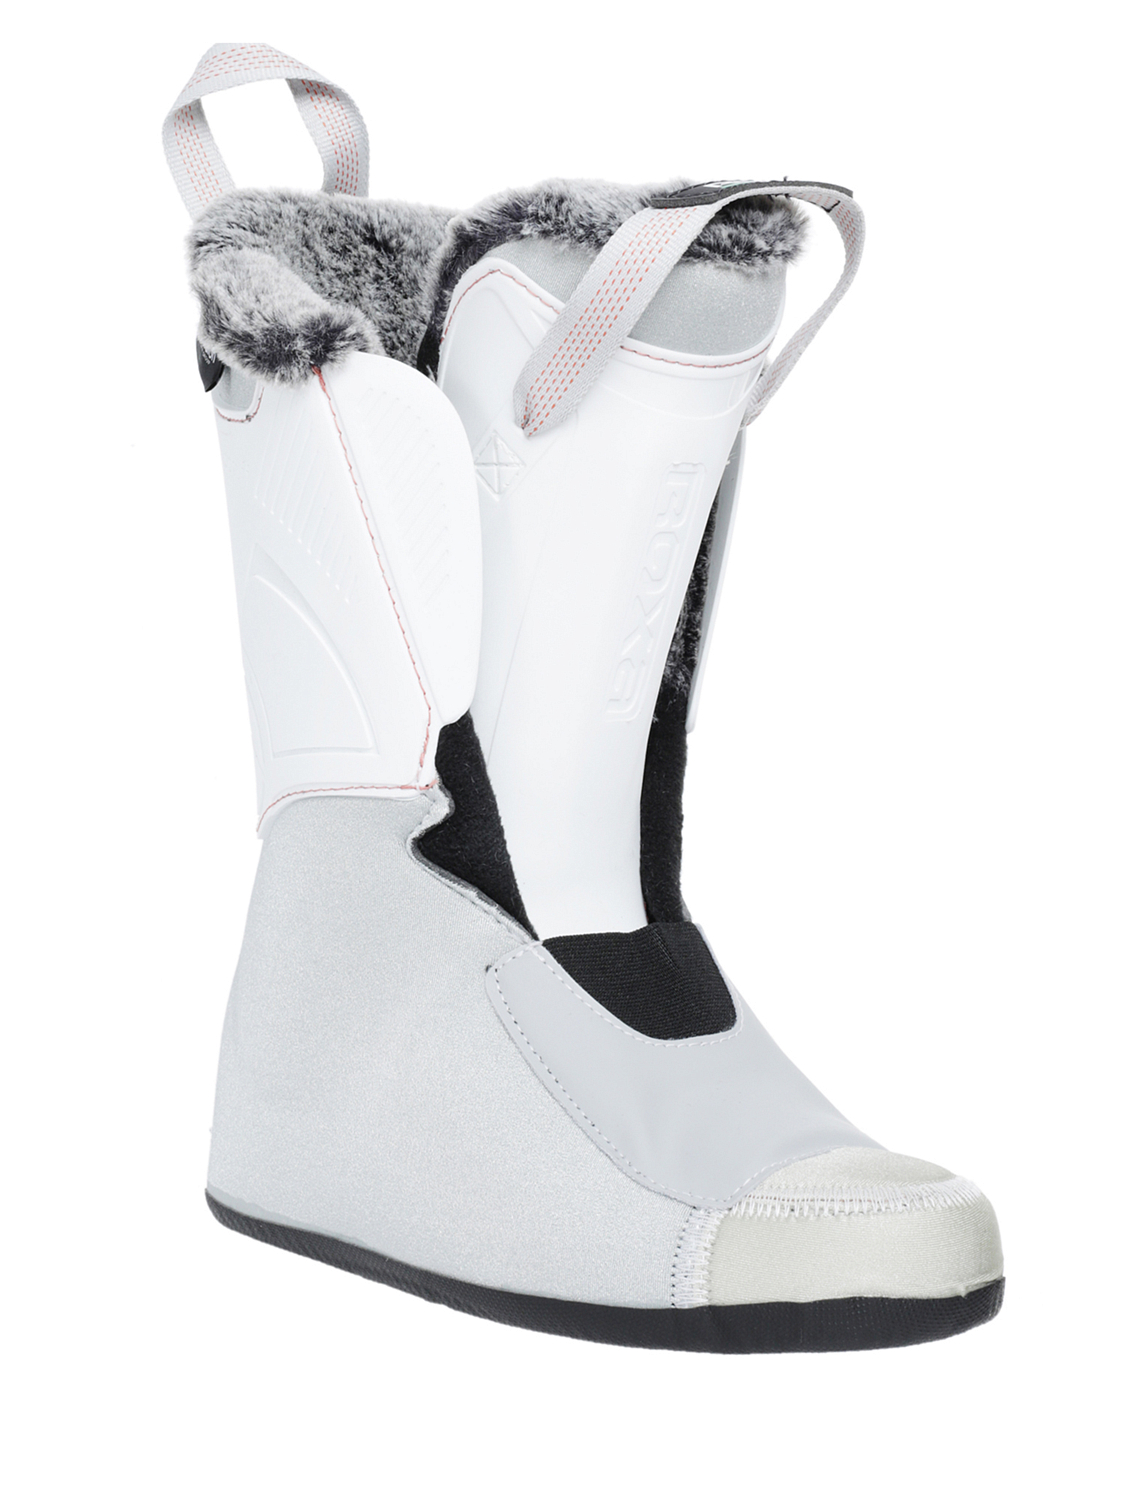 Горнолыжные ботинки ROXA Rfit W 95 GW Light Grey/Coral